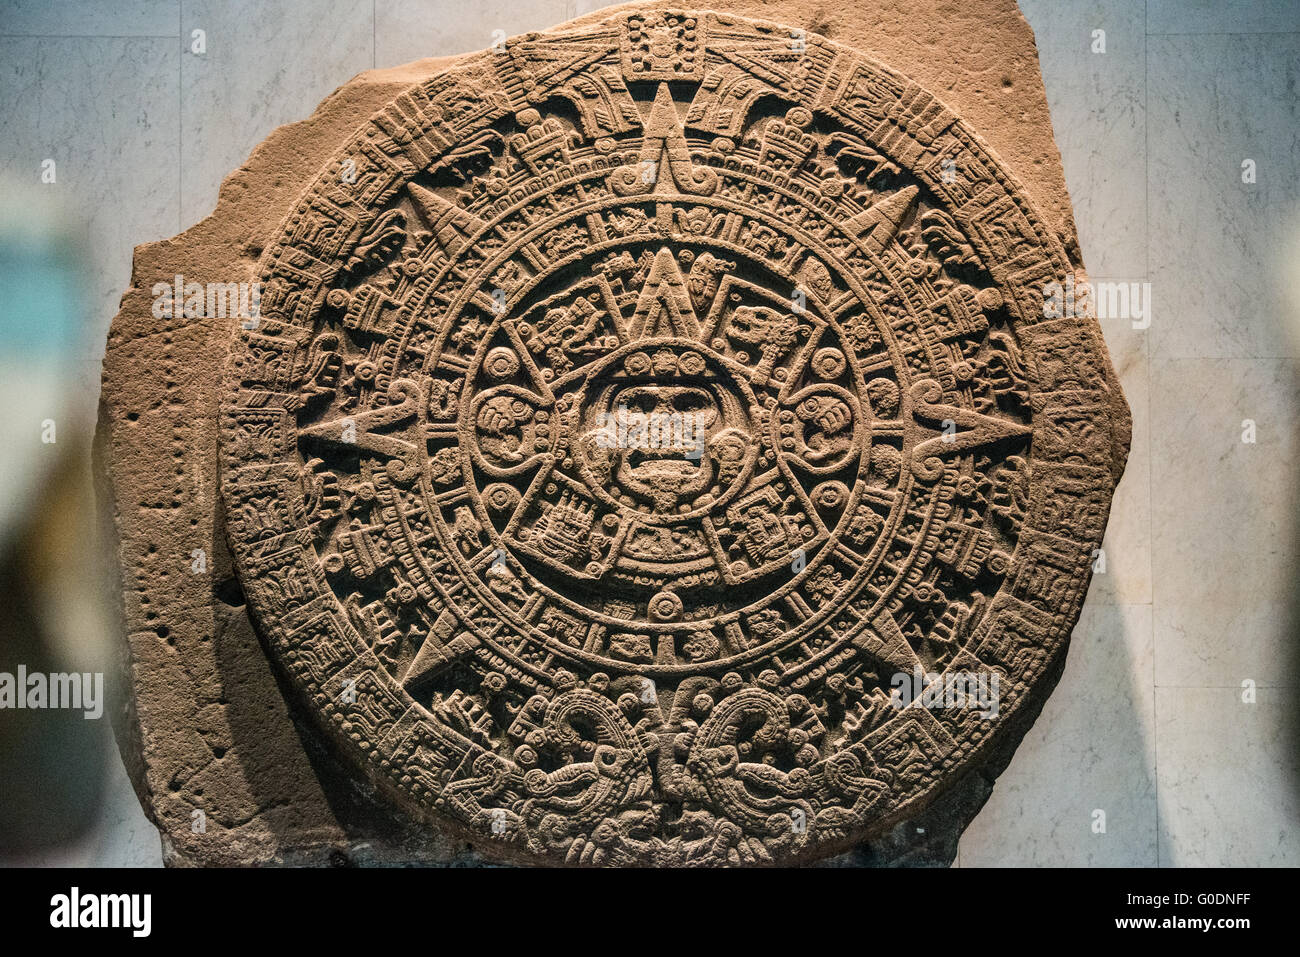 Mexiko-Stadt, Mexiko - vermutlich Anfang des 16. Jahrhunderts bis Ende des 15. Jahrhunderts, ist der Stein der Sonne, einer großen Scheibe fast 12 Fuß und 24 Tonnen. Entdeckt im Jahre 1790 an der Plaza Mayor, wurde der Stein der Sonne ursprünglich als die Azteken-Kalender misidentified. Es wurde vor kurzem als eine große Gladiatorenkämpfe Opferaltar, bekannt als ein Temalacatl identifiziert. Es war nicht wegen ein tiefer Riss fertig, die von einer Seite in die Mitte des Stückes auf der Rückseite läuft. Trotz der Fraktur wurde es verwendet, um die Kämpfe zwischen Krieger in der Tlacaxipehualiztli-Zeremonie Bühne. Es Stockfoto